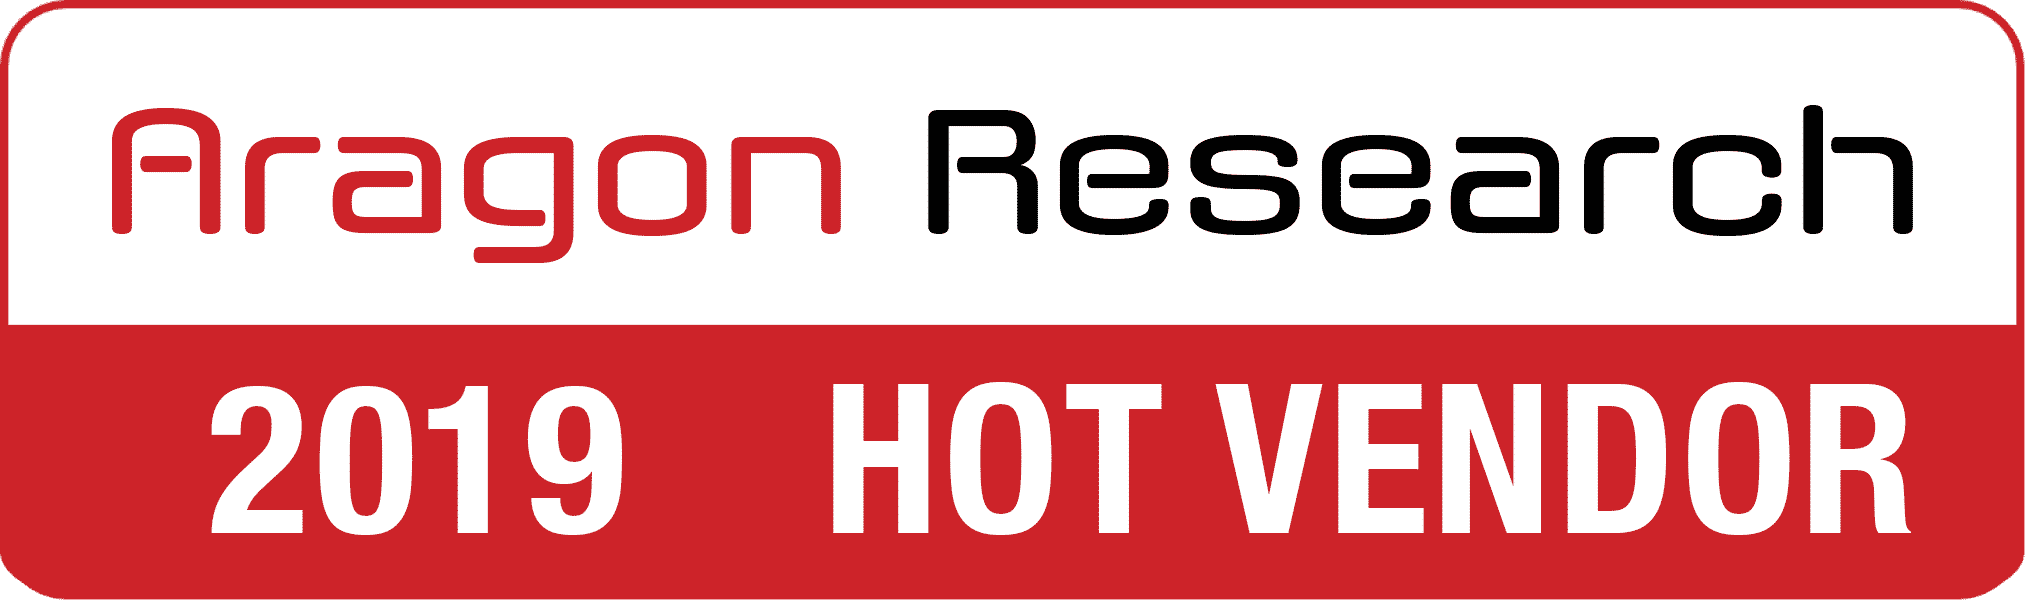 2019 hot vendor - Hot Vendors™